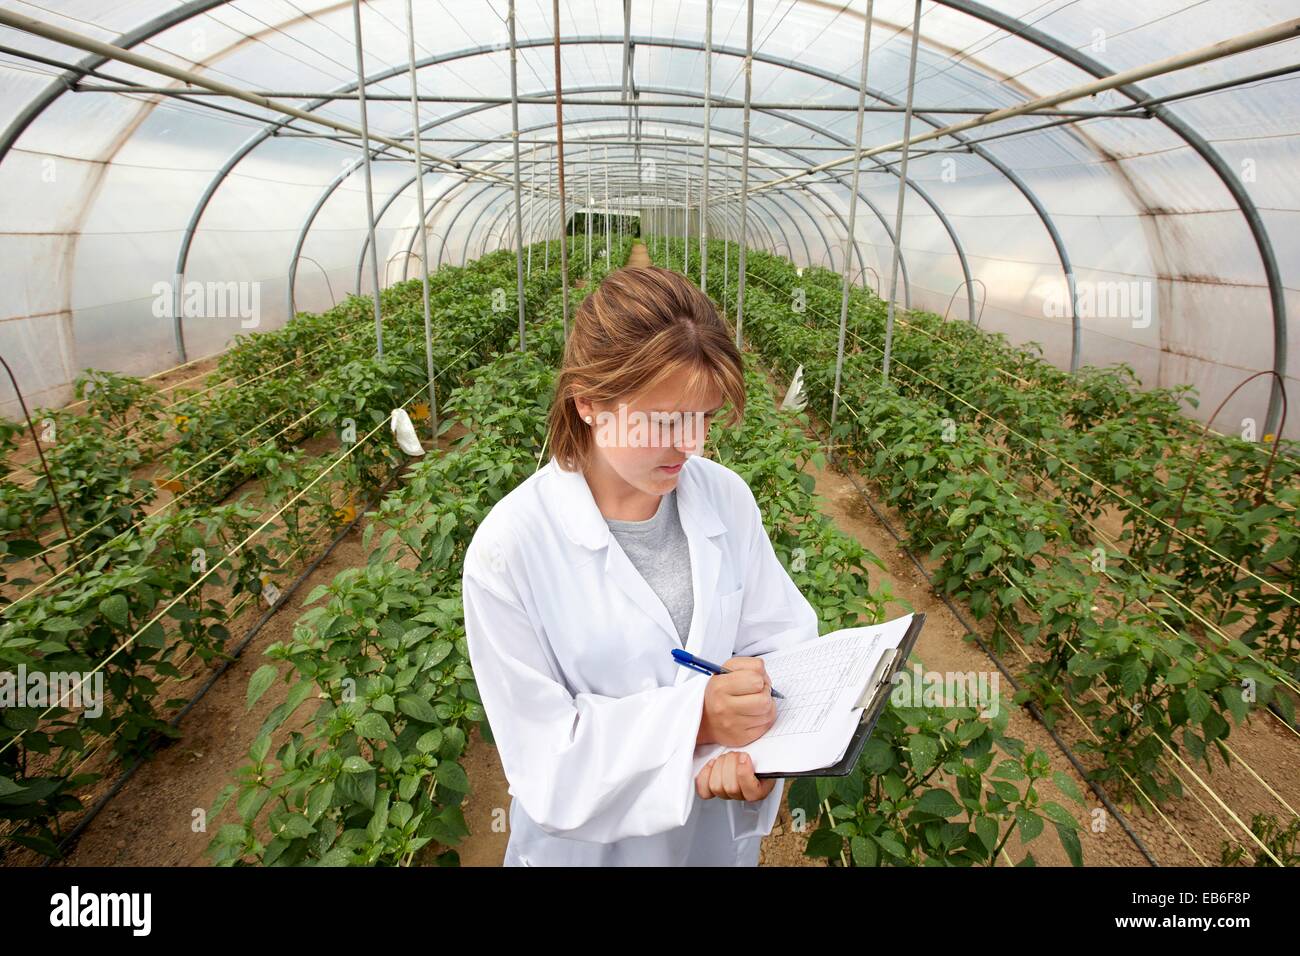 La biofumigación test: supervisión de las plantas de pimientos de Gernika infectados Neiker Tecnalia Instituto de investigaci-n y Desarrollo Agrario Foto de stock